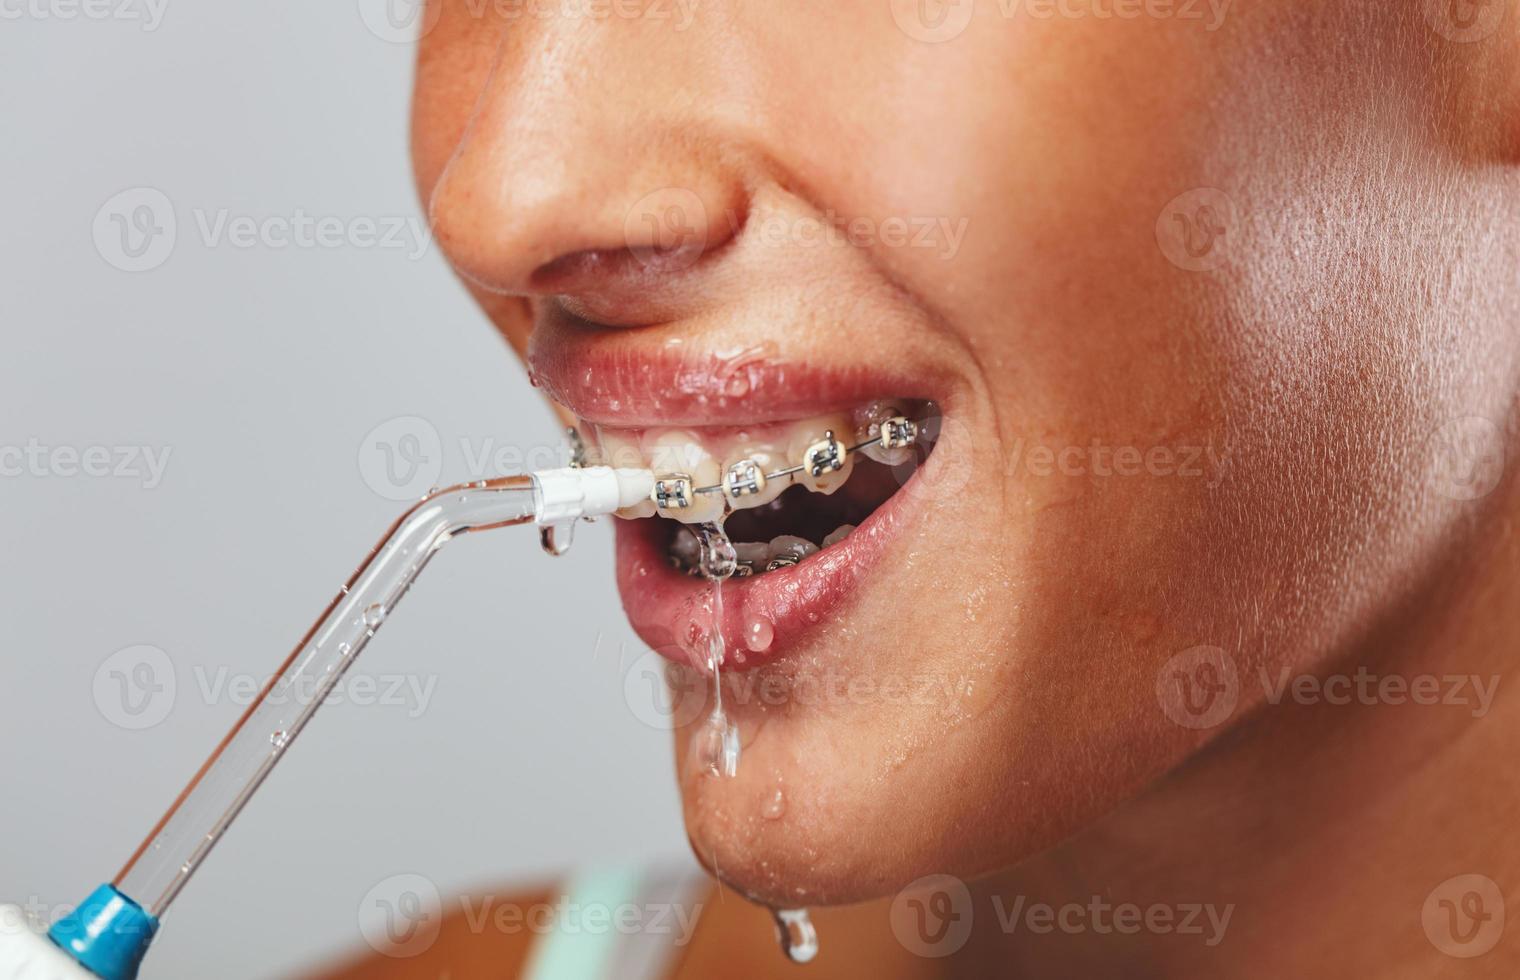 poetsen tanden met water flosser foto